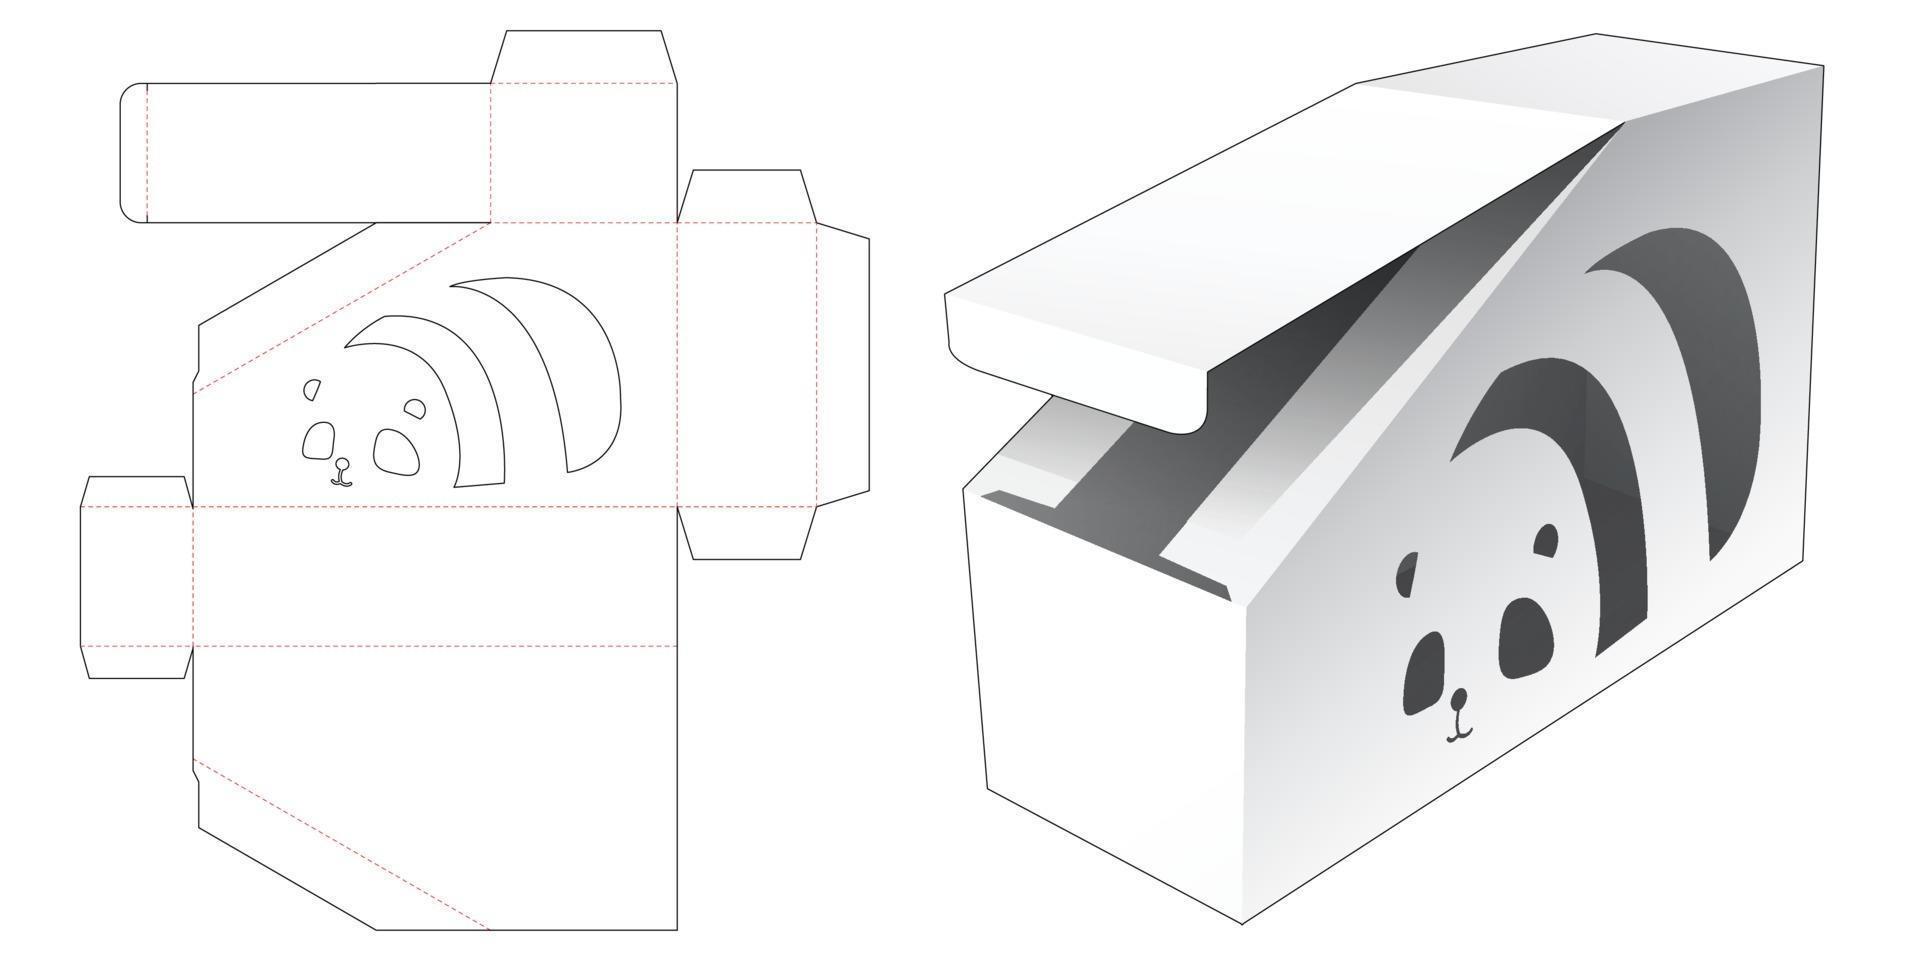 caixa chanfrada com janela em formato de desenho animado panada modelo recortado vetor